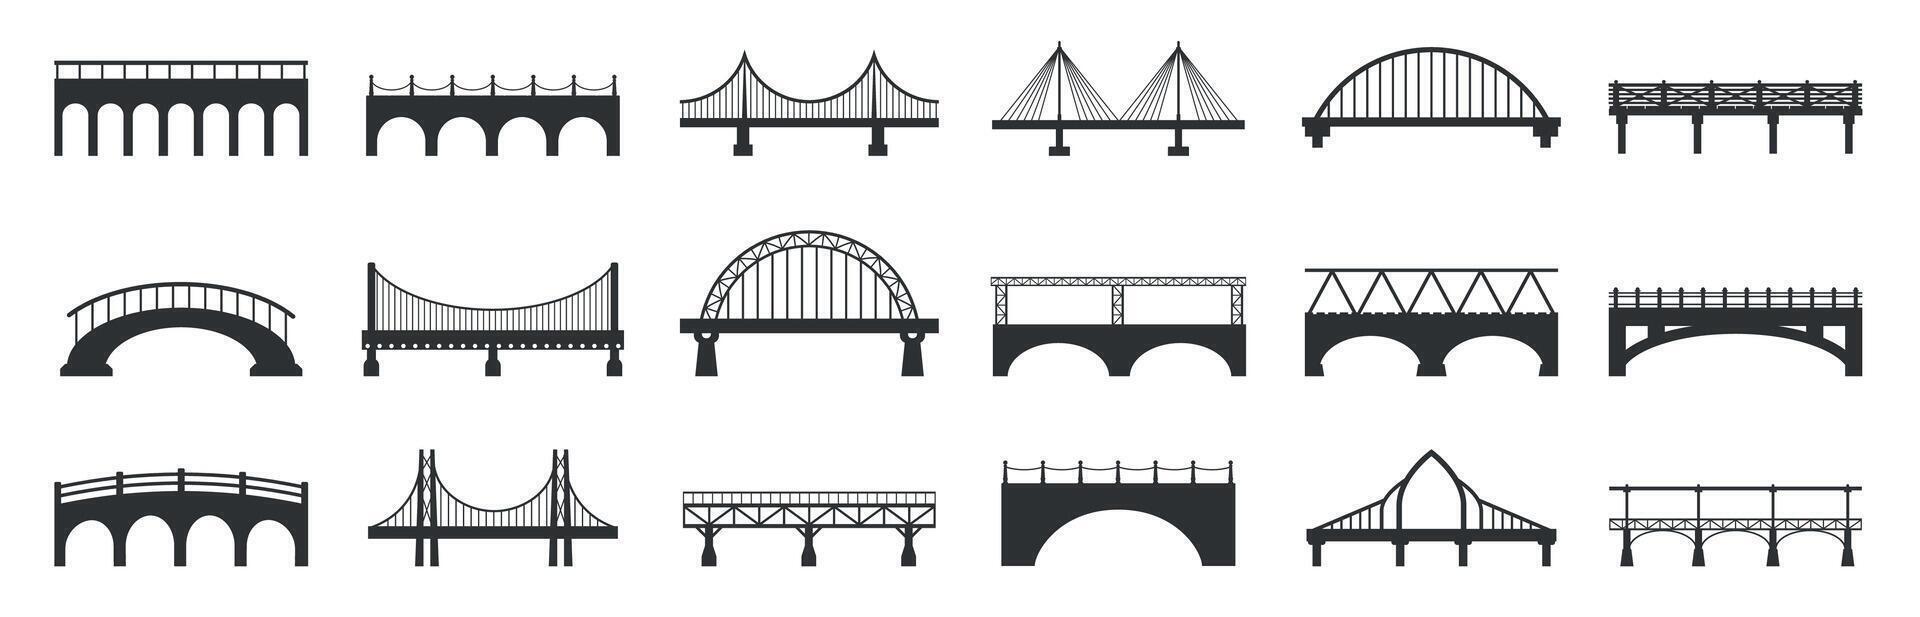 puente silueta. resumen puente peatonal construcciones con Roca metal vigas, industrial urbano arquitectura edificio negro iconos vector aislado conjunto